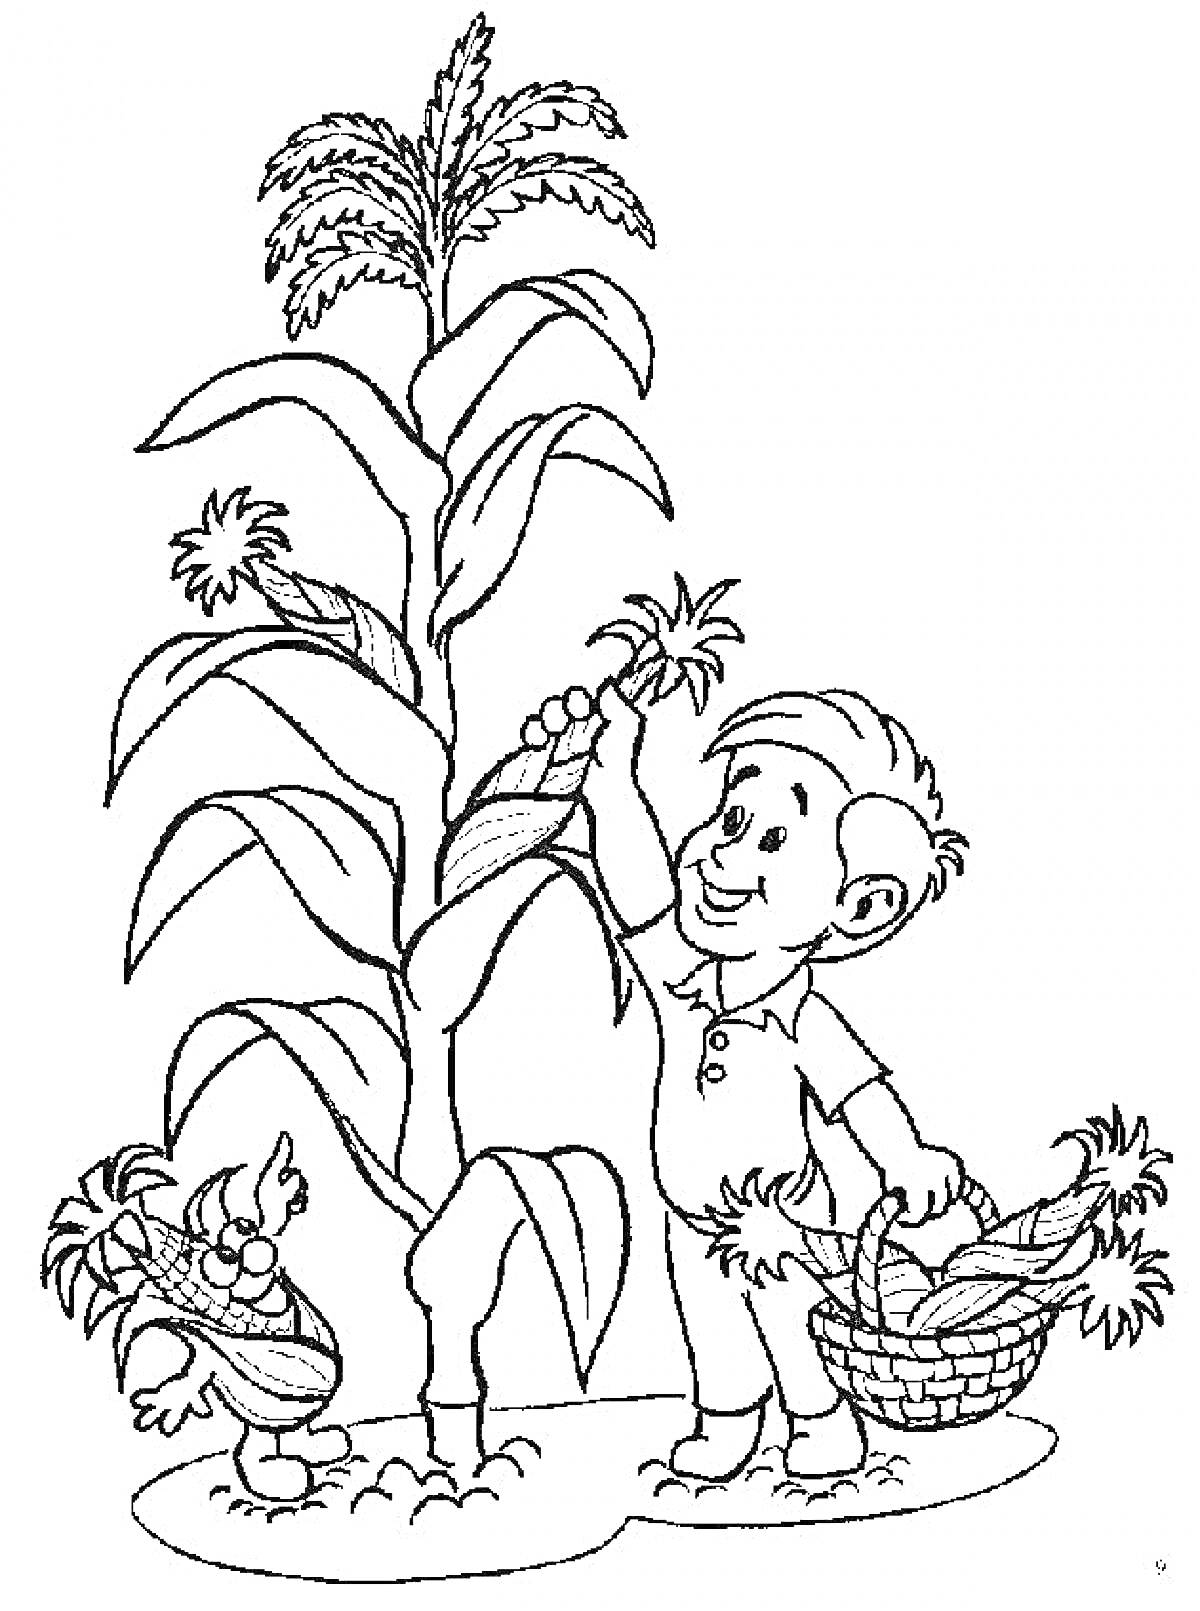 Раскраска Мальчик с корзиной кукурузы и высоким растением кукурузы